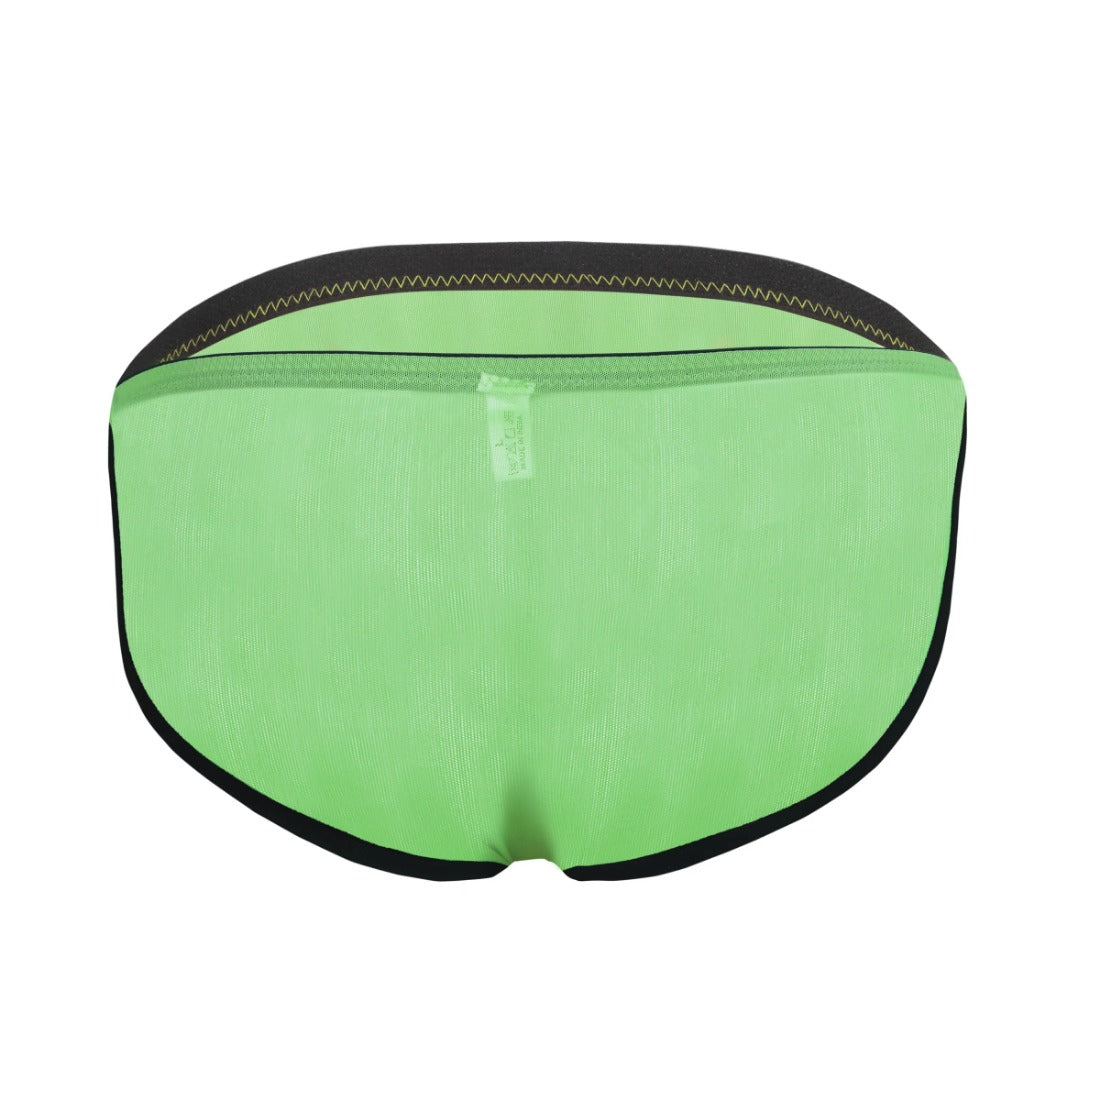 Men's Mesh Power Net Transparent Sexy Brief Underwear (Green) - GillKart